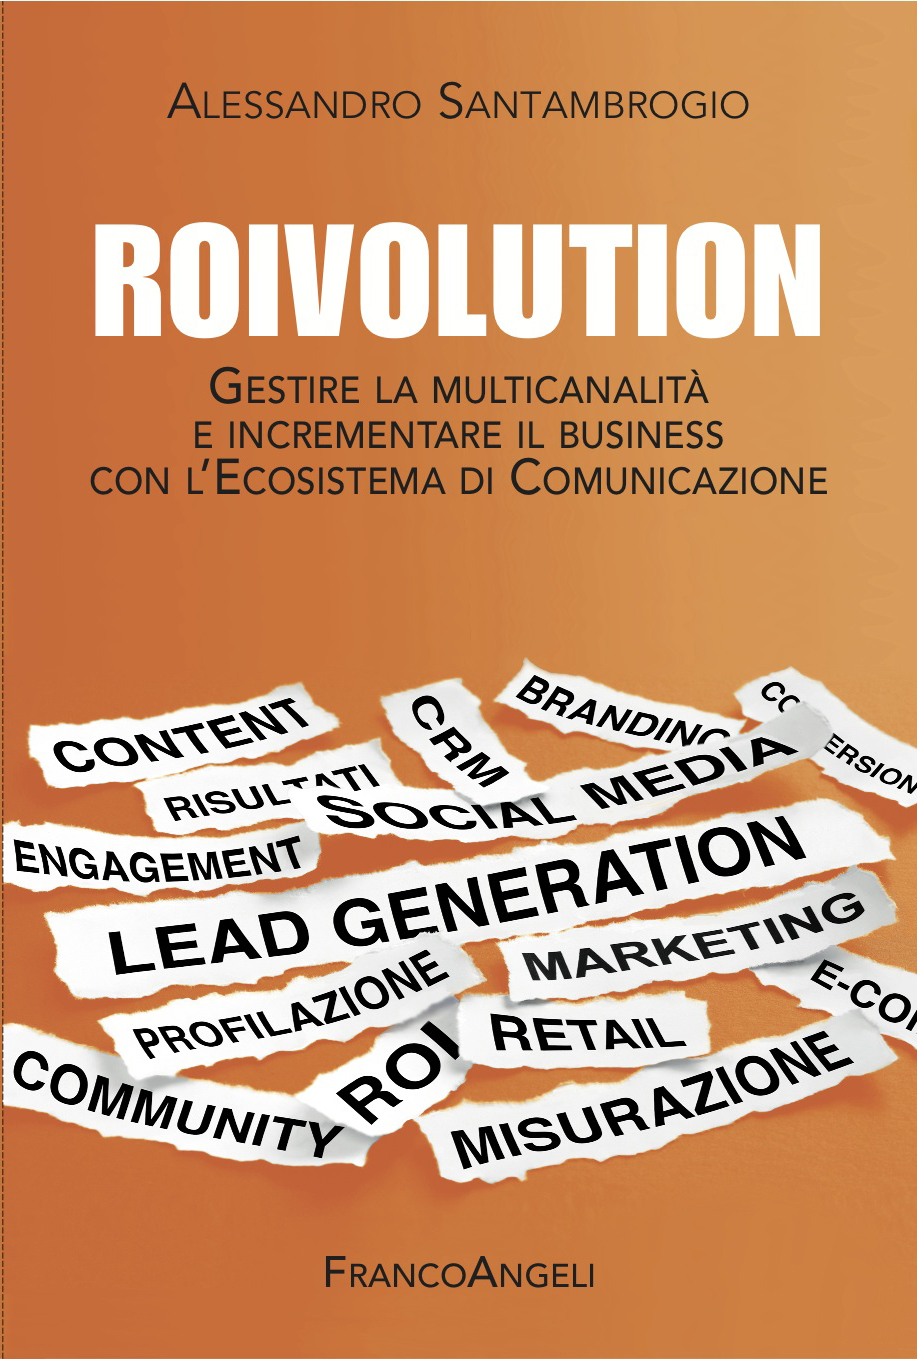 ROIvolution: usare la multicanalità per la Lead Generation